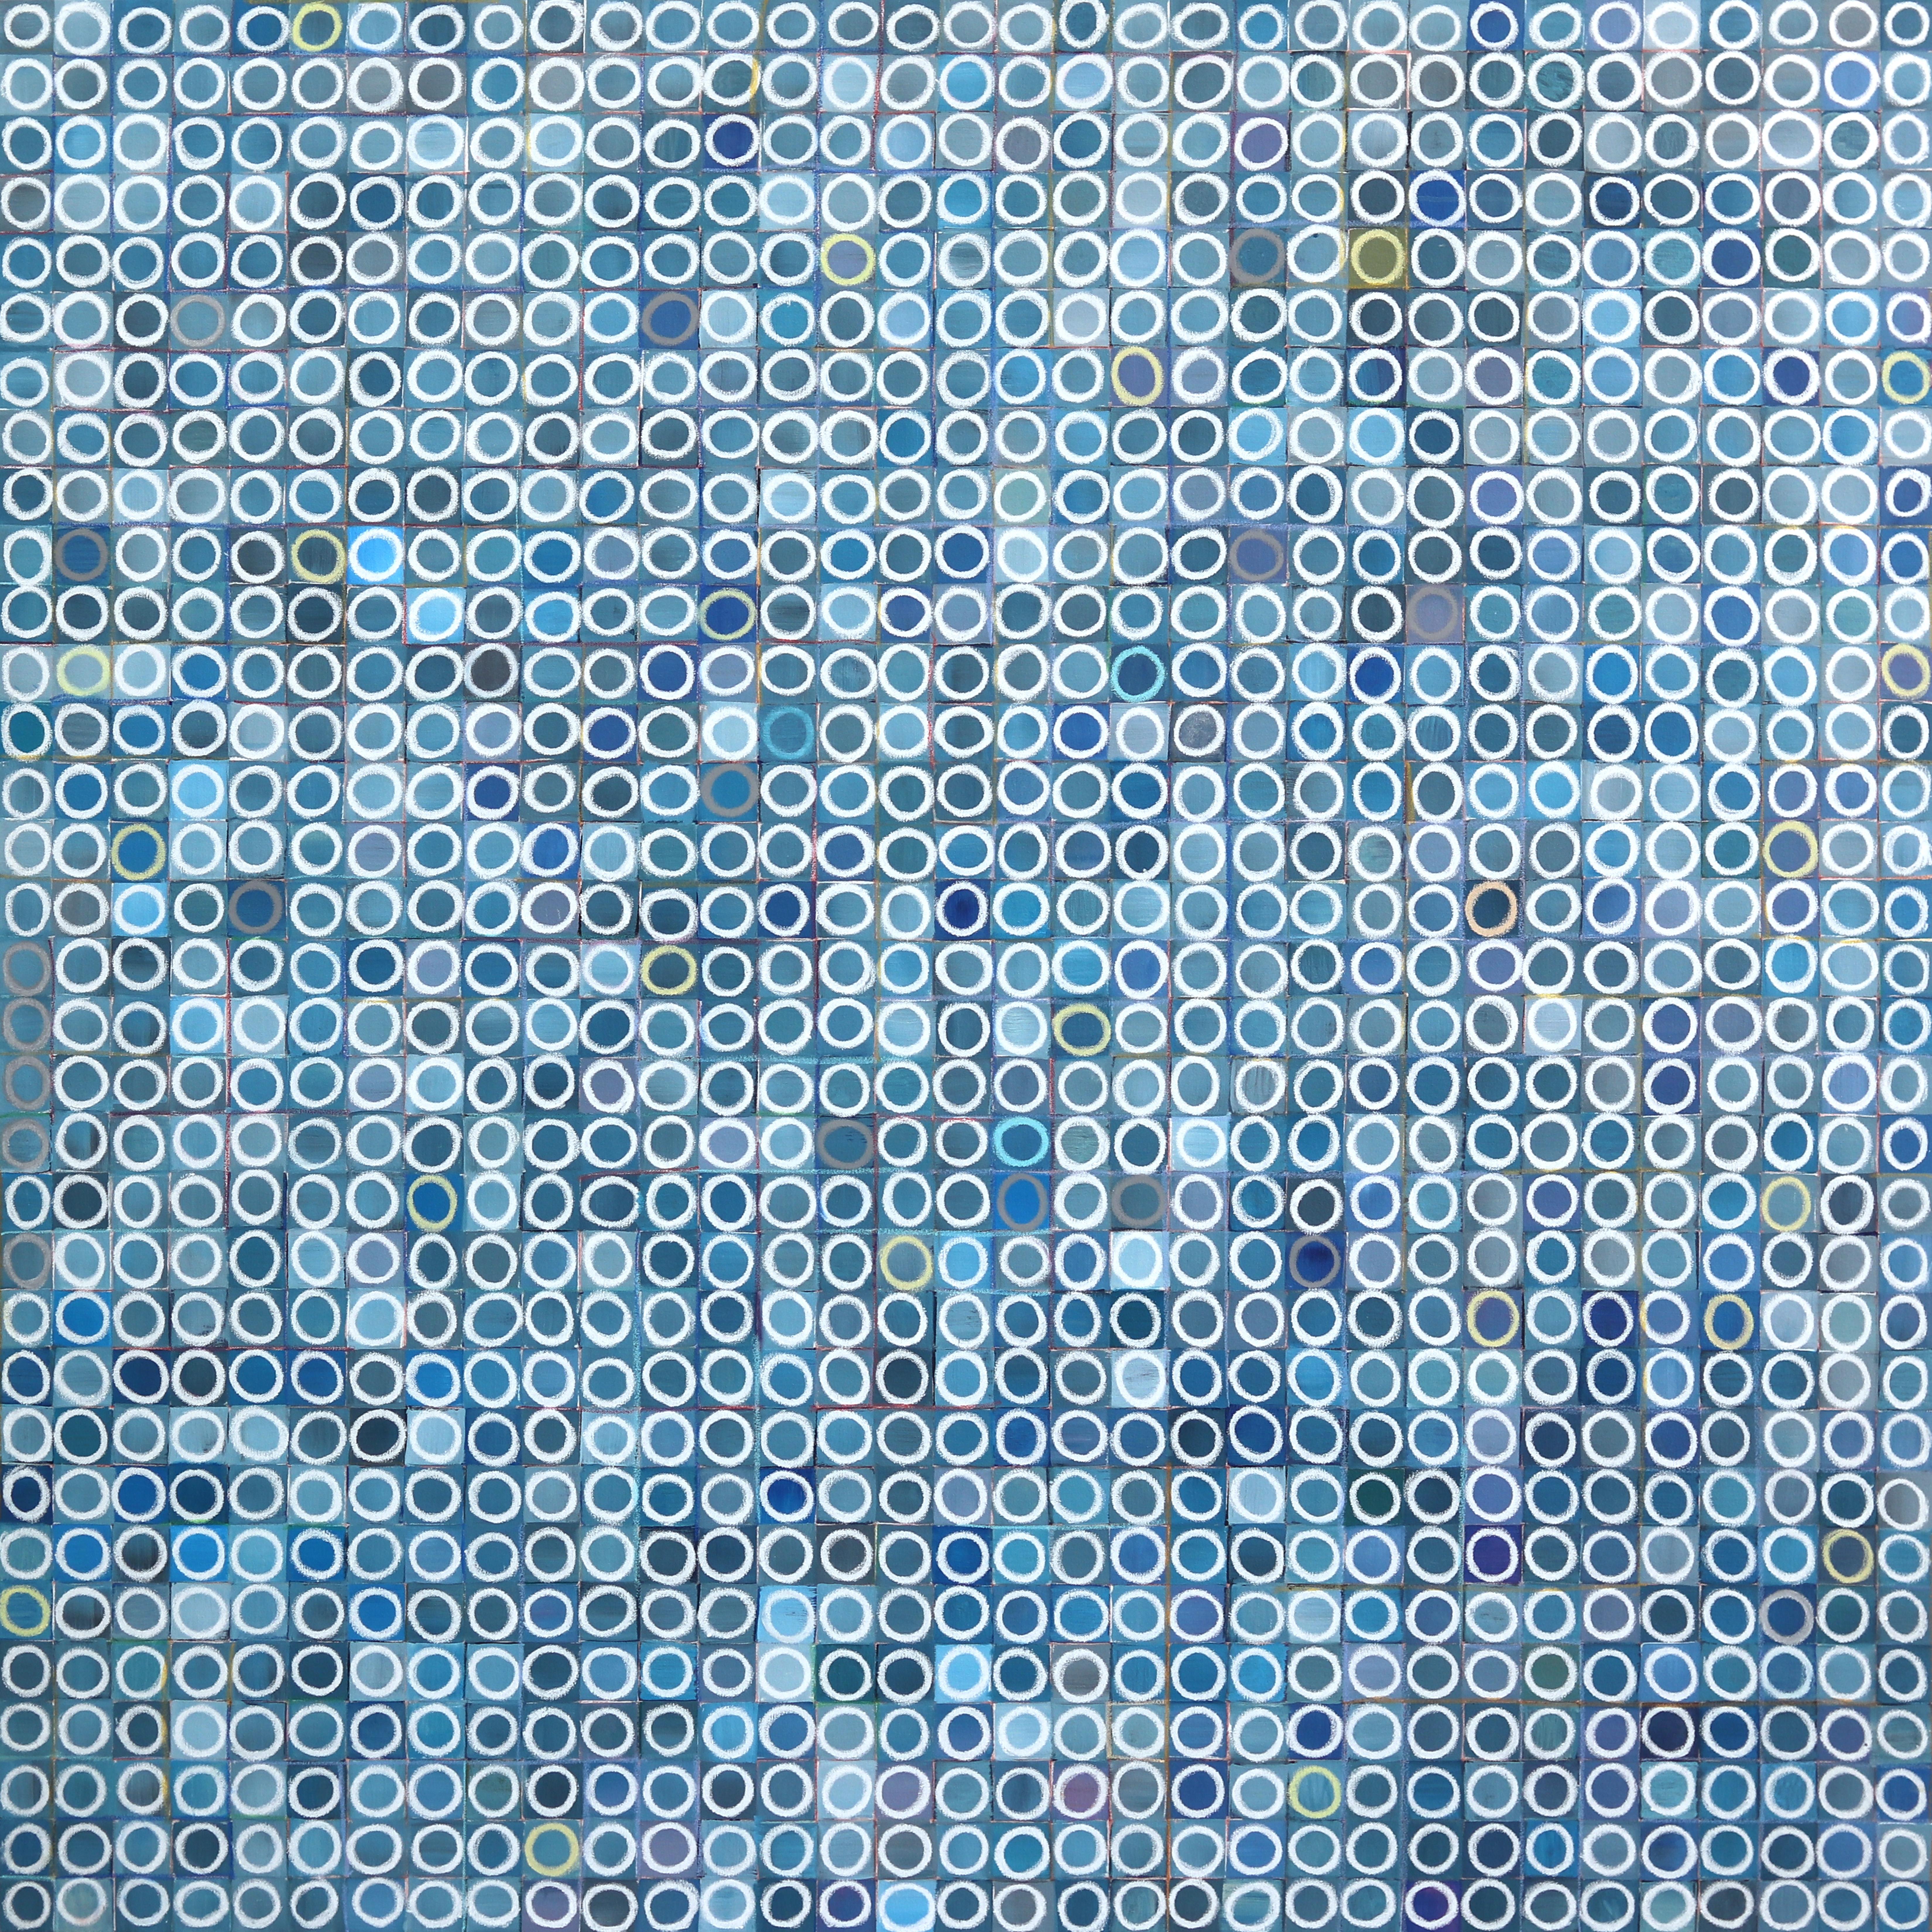 Circles 1089 - Grande peinture originale géométrique abstraite bleue